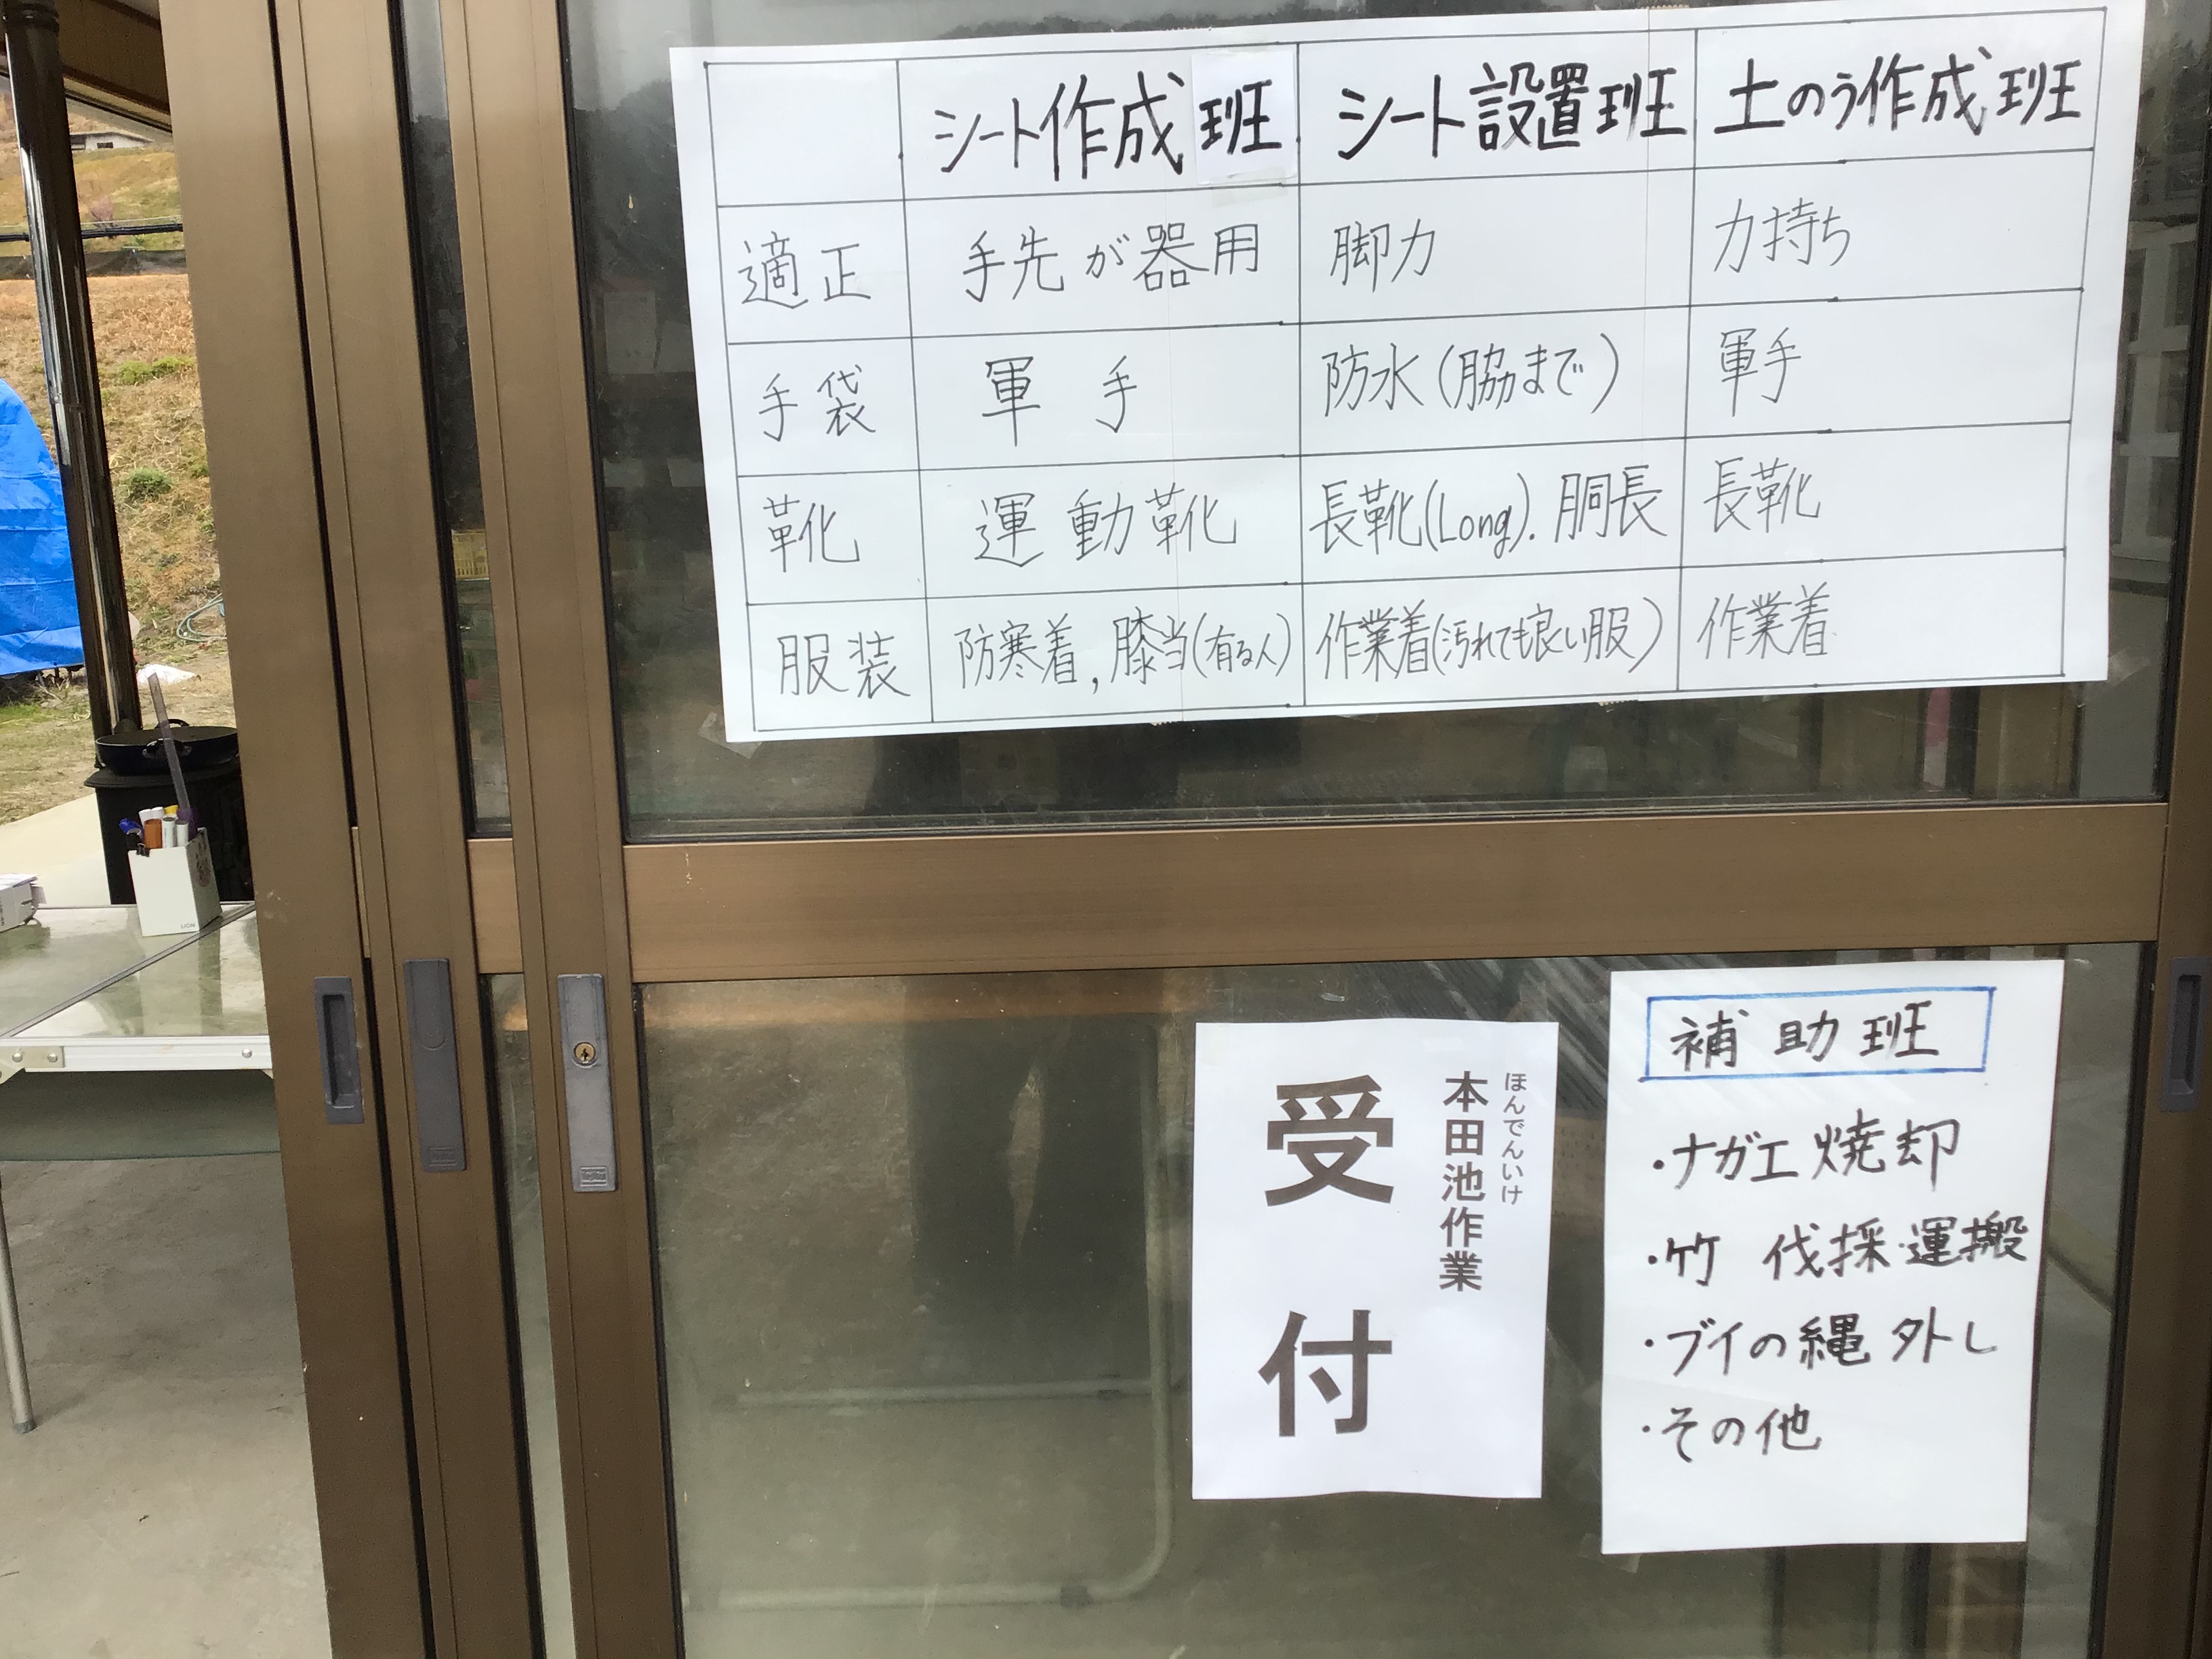 駆除活動受付建屋入口に張られた作業内容。これは便利。田主役員の岡本賢三さんの奥様が受付でした。走り回られていました。